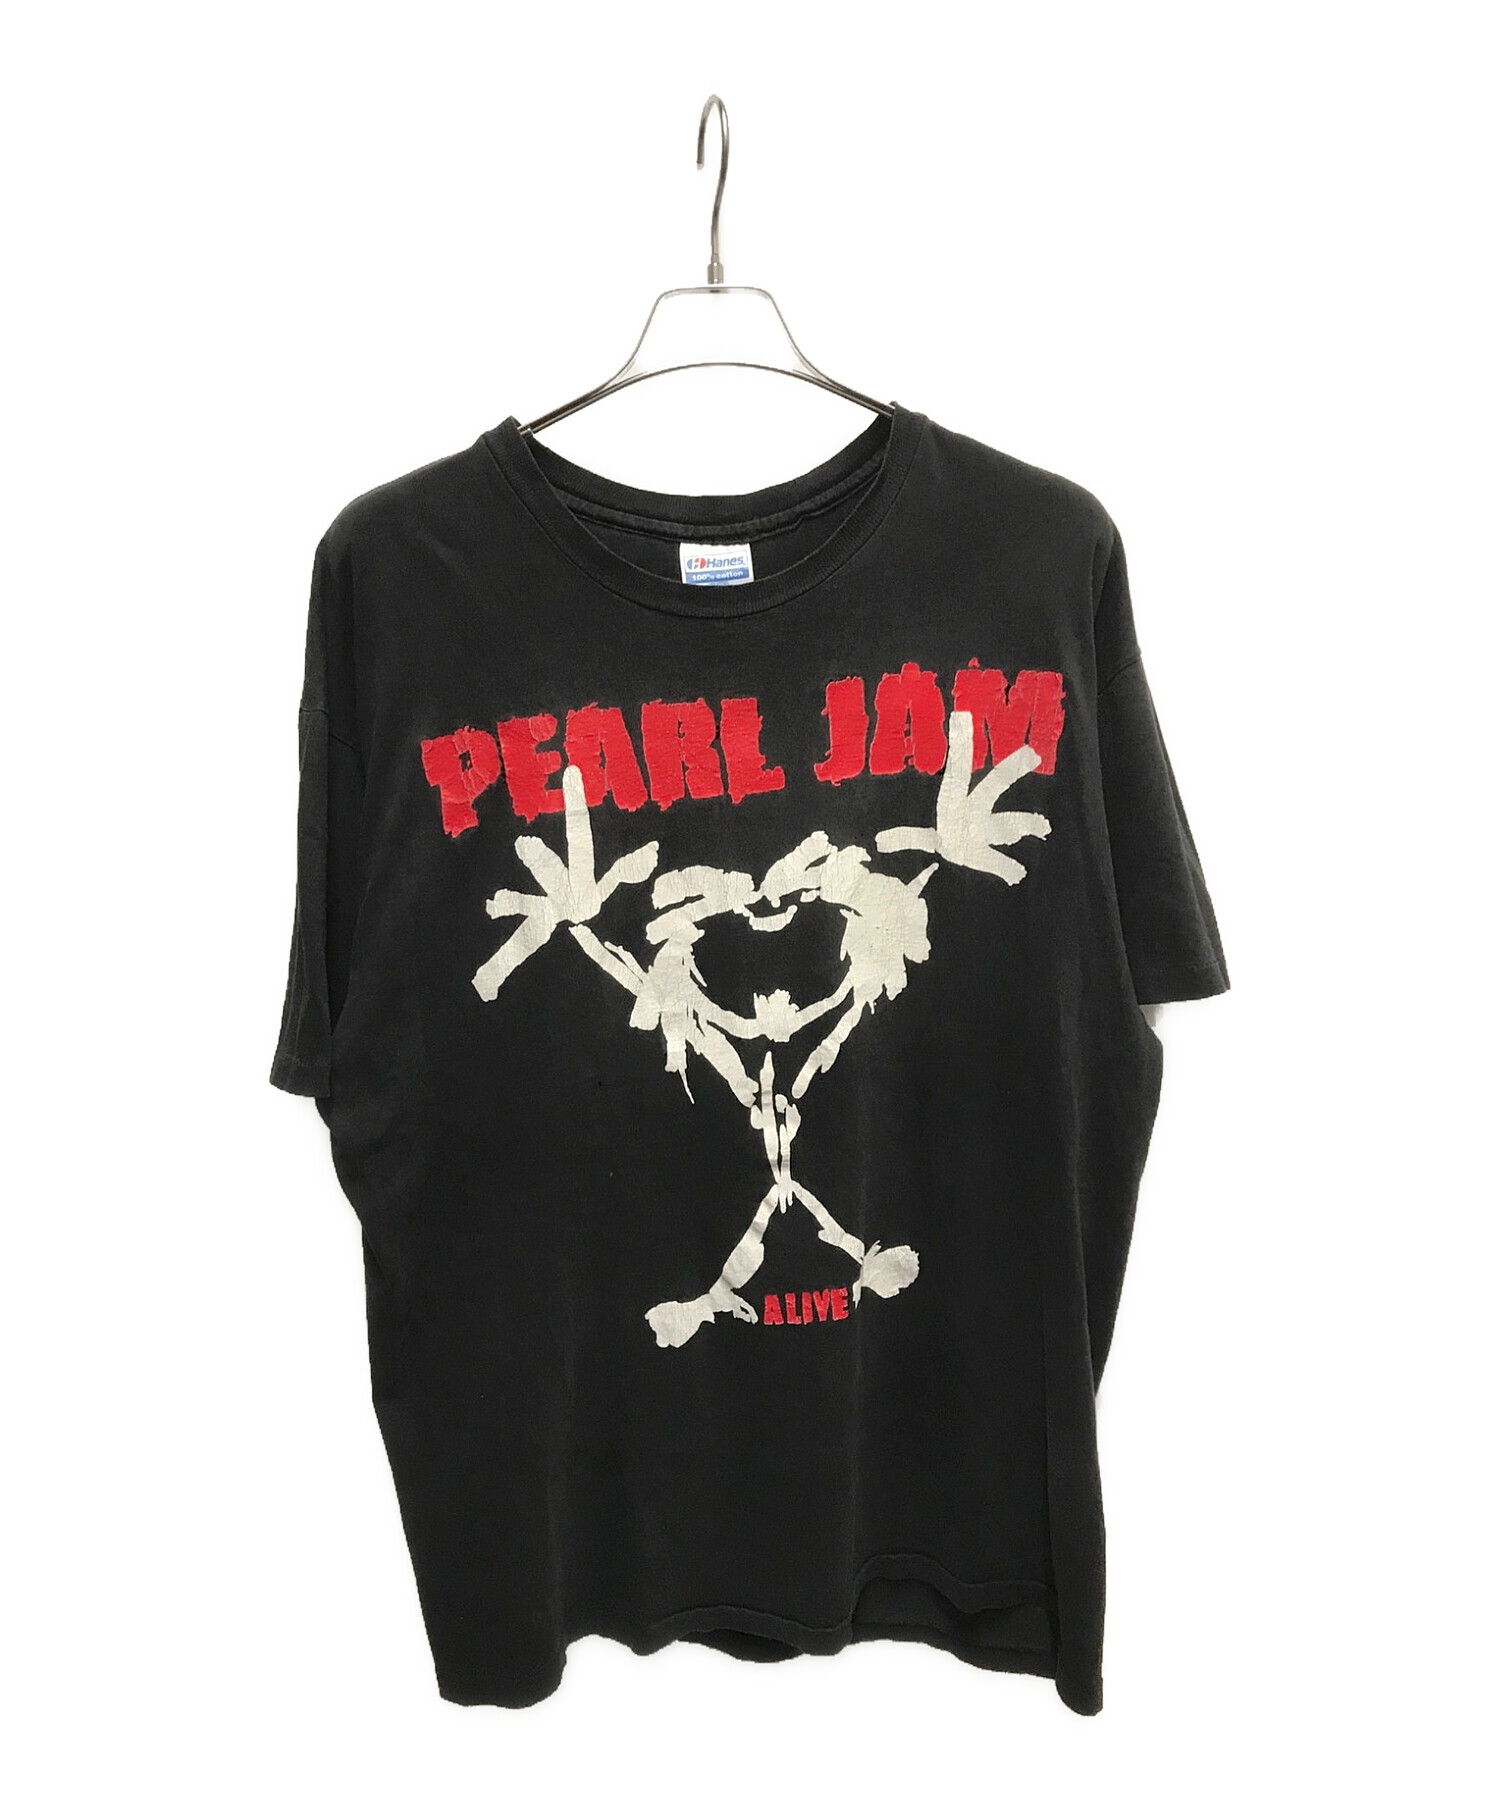 PEARL JAM ALIVE (パールジャムアライブ) ヴィンテージプリントtシャツ ブラック サイズ:XLARGE